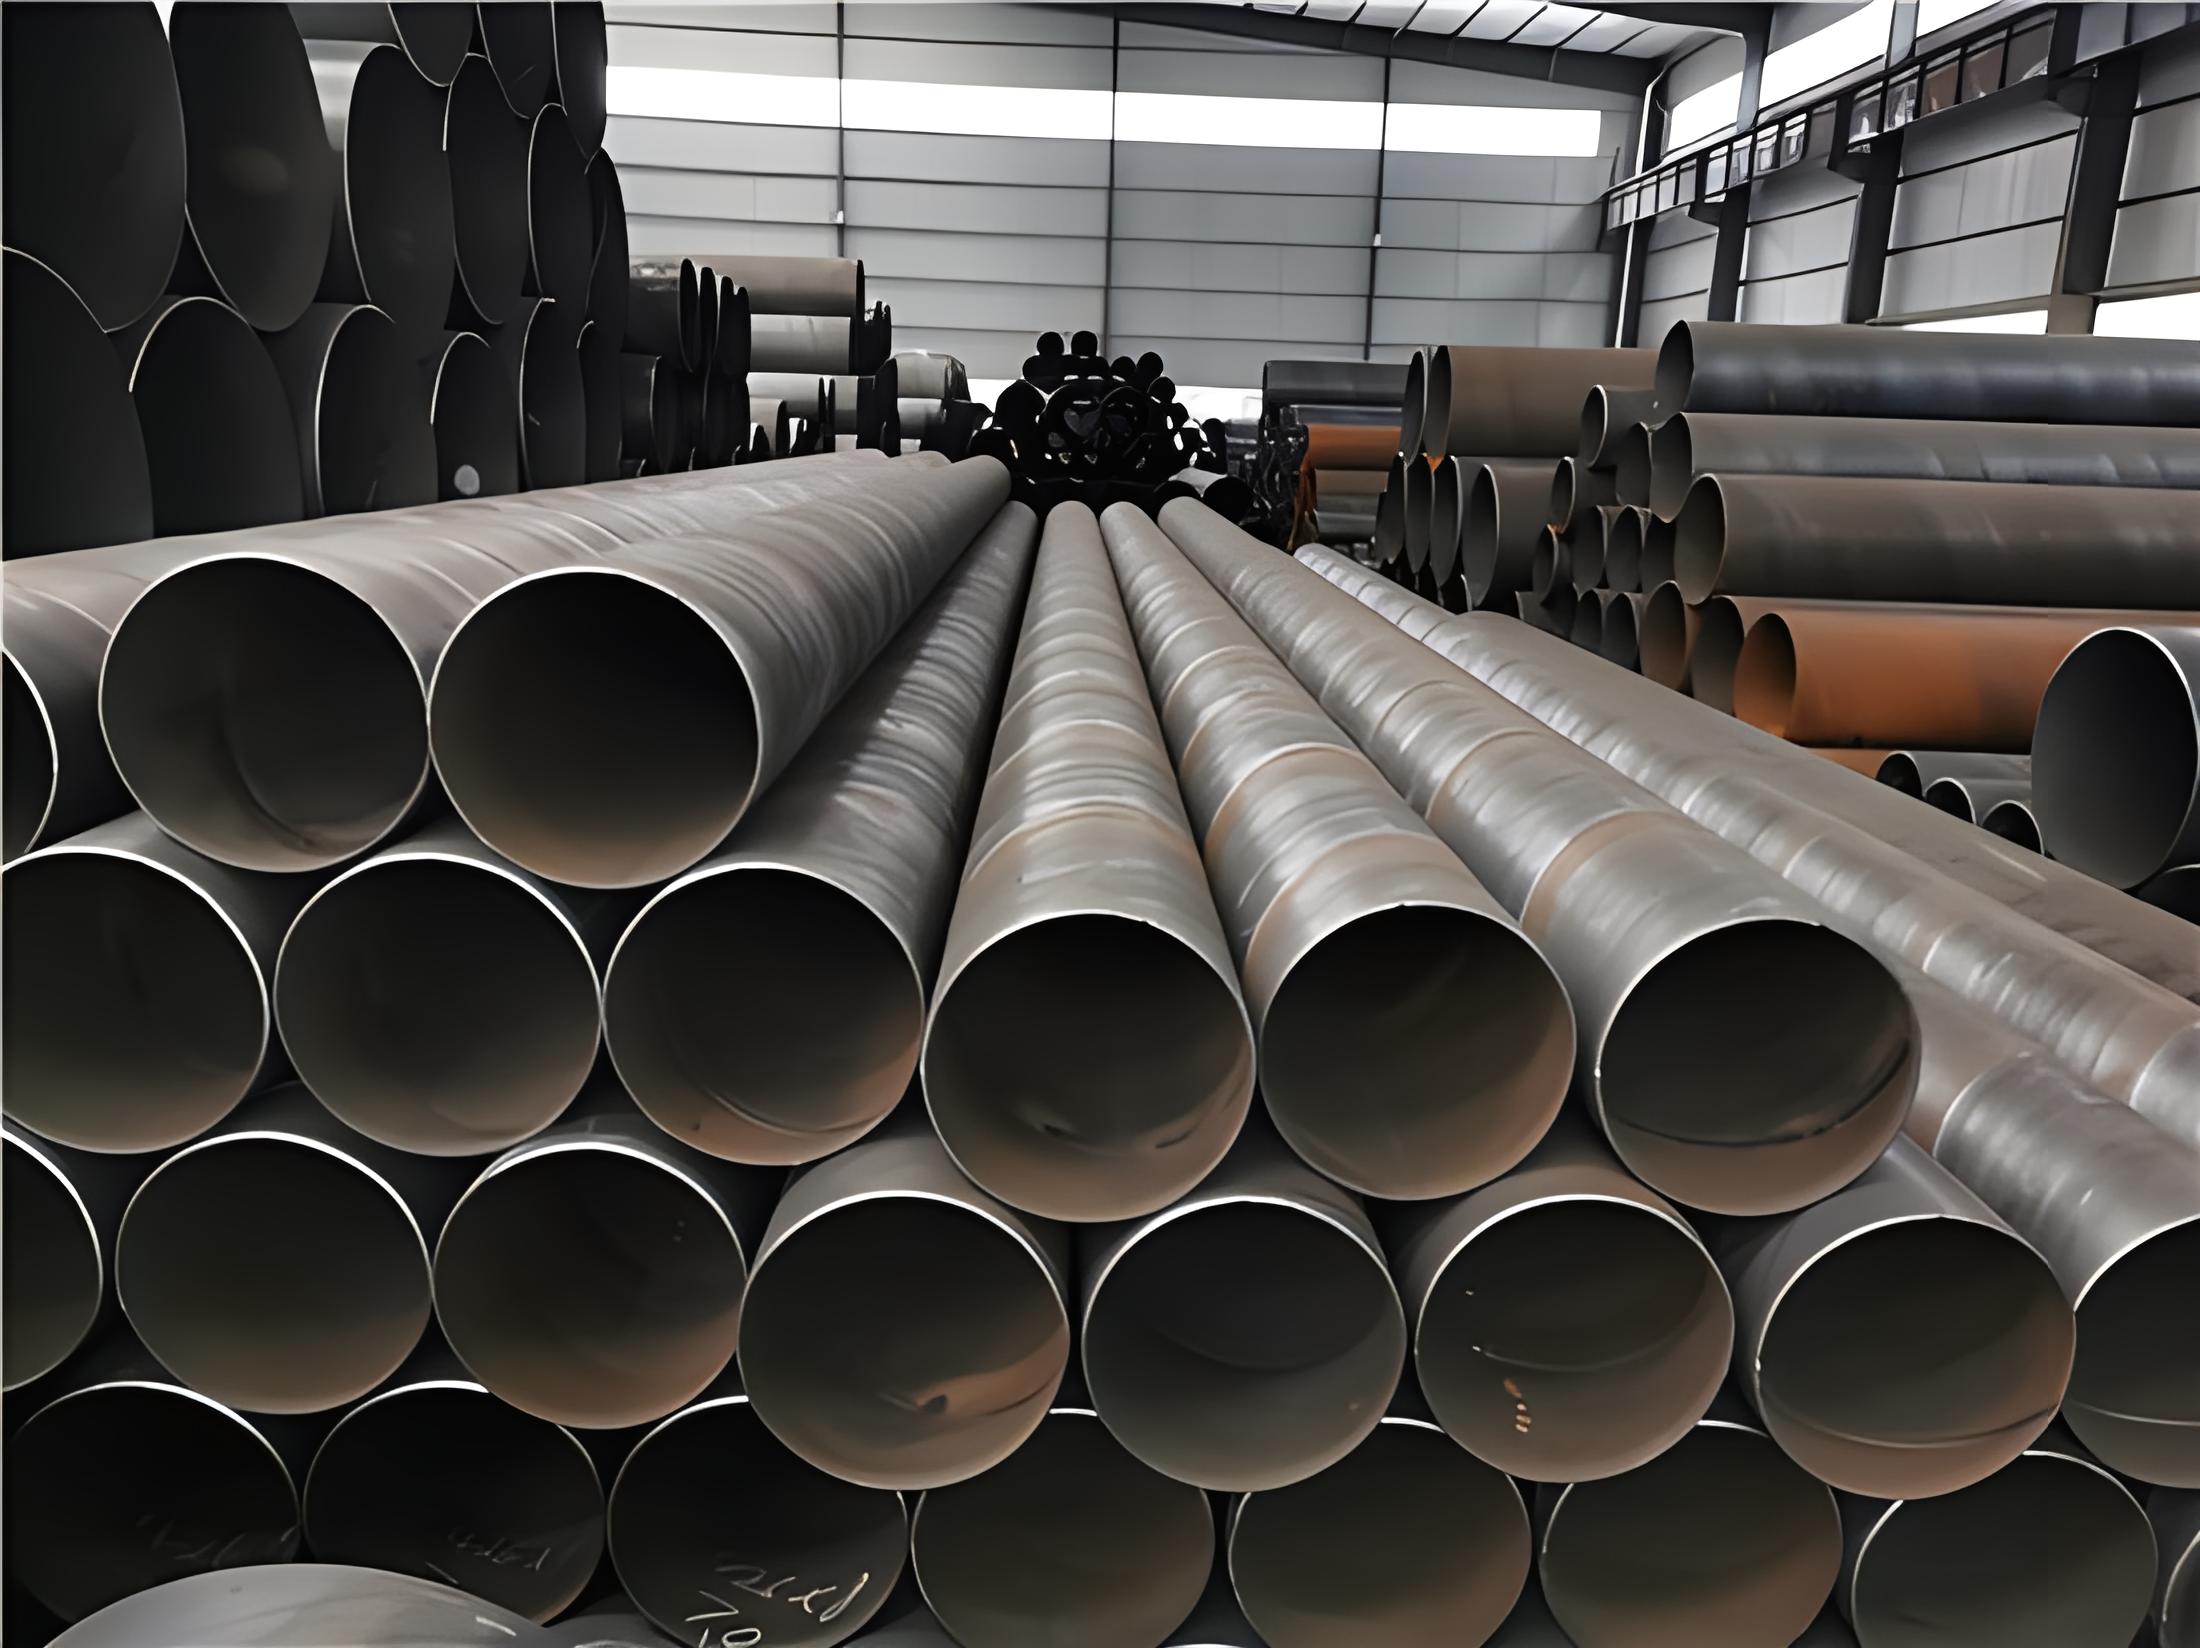 梧州螺旋钢管现代工业建设的坚实基石